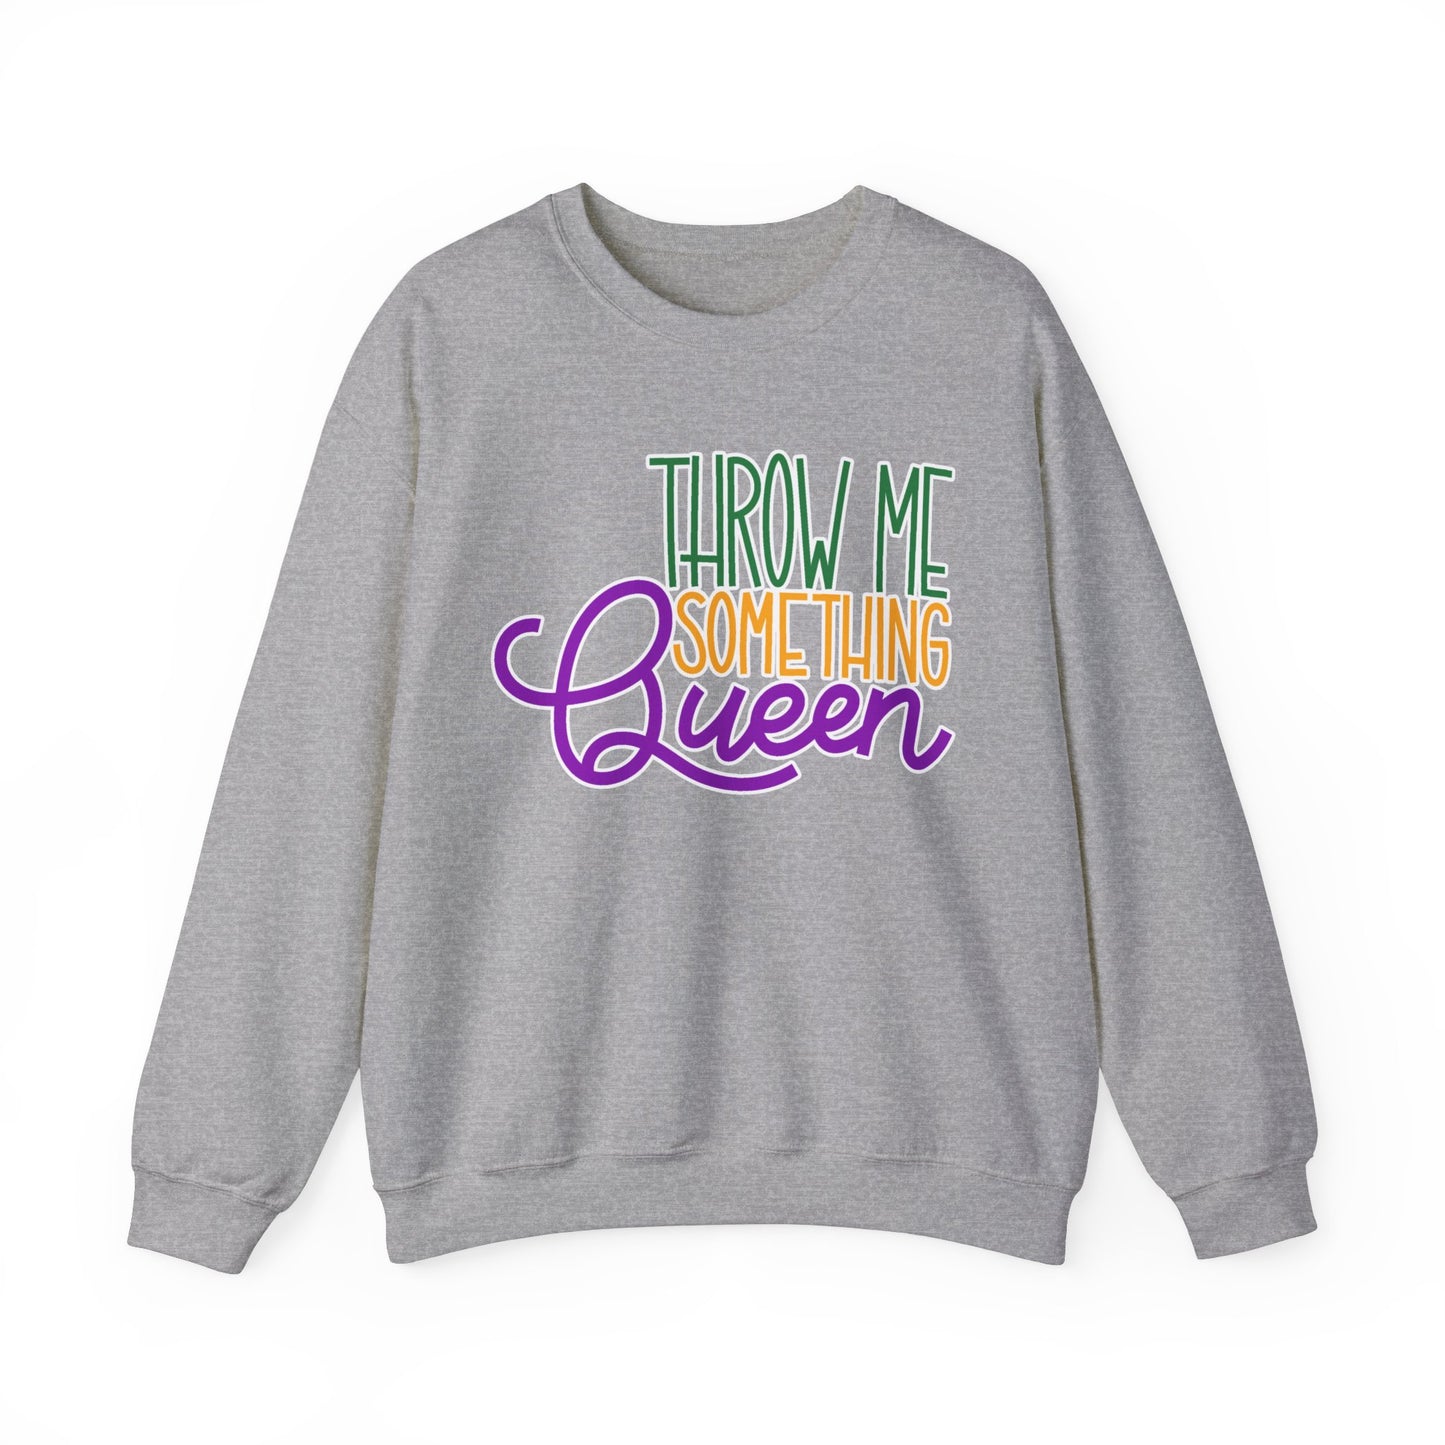 Throw Me Something Queen Sweatshirt